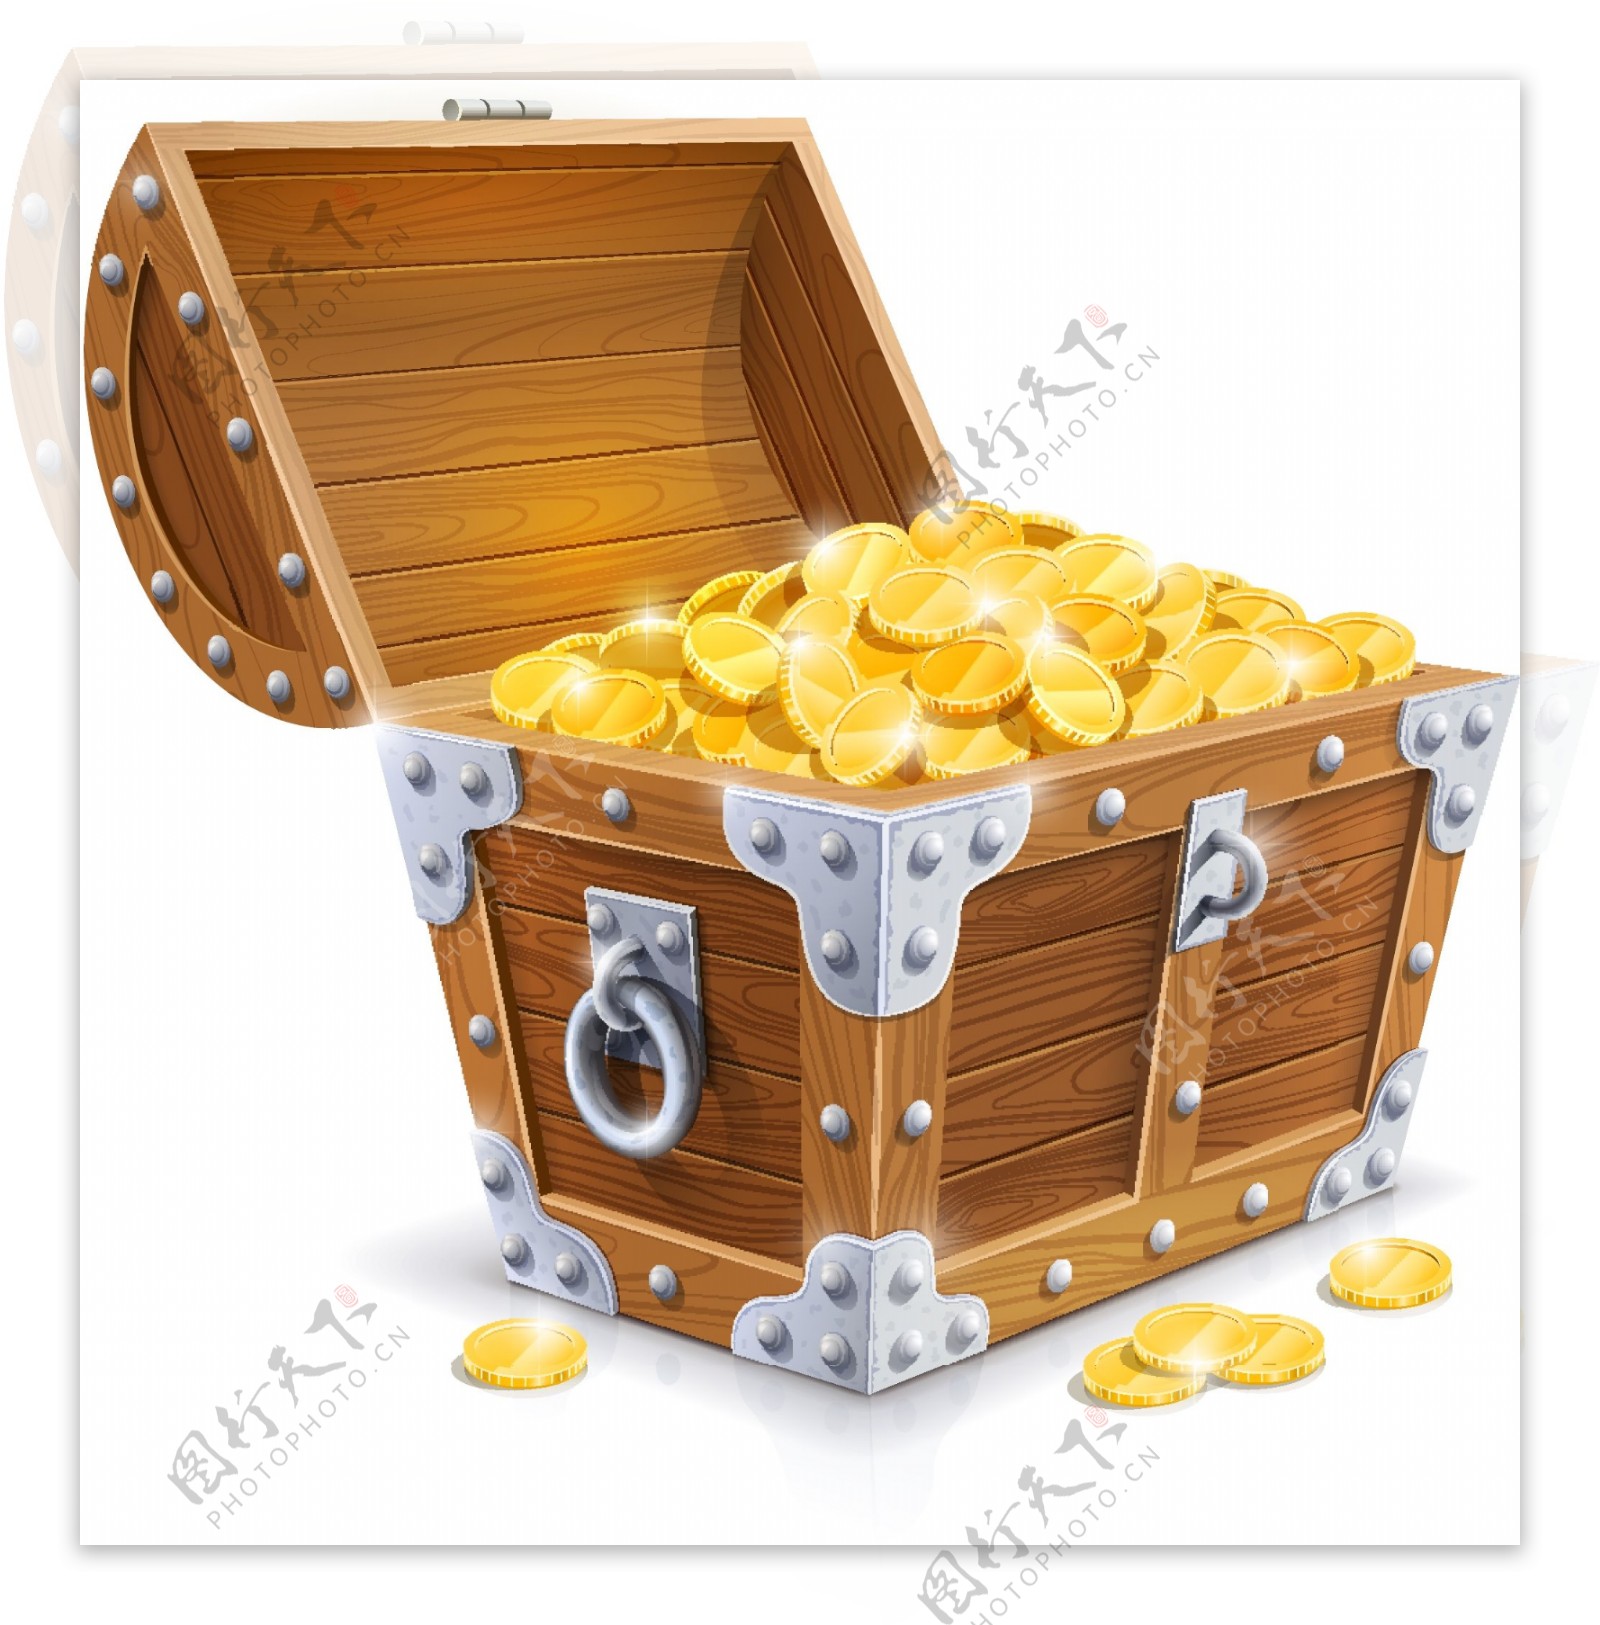 装满金币的木宝箱